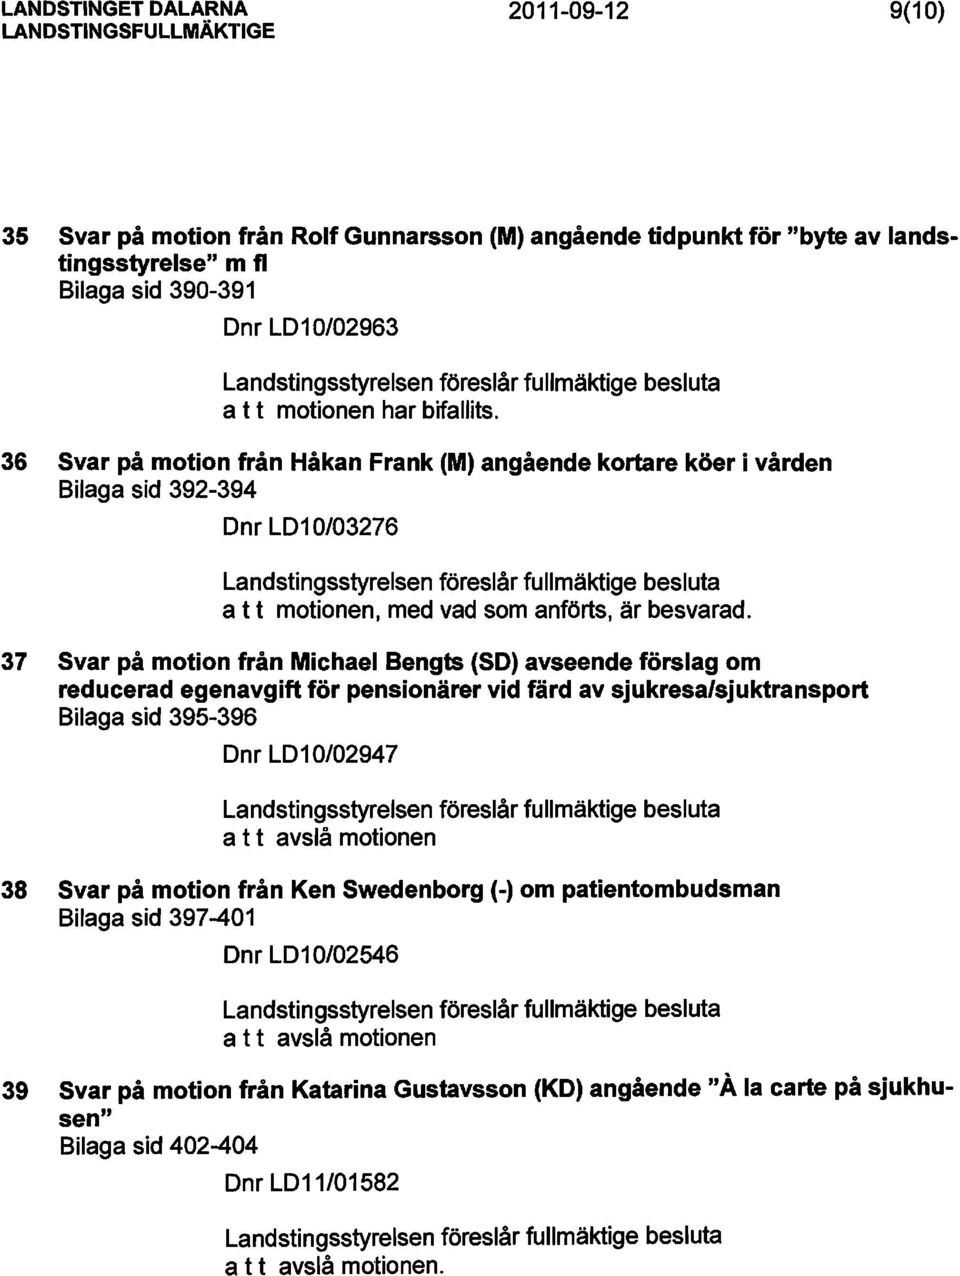 36 Svar på motion från Håkan Frank (M) angående kortare köer i vården Bilaga sid 392-394 Dnr LD1 0/03276 37 Svar på motion från Michael Bengts (SO) avseende förslag om reducerad